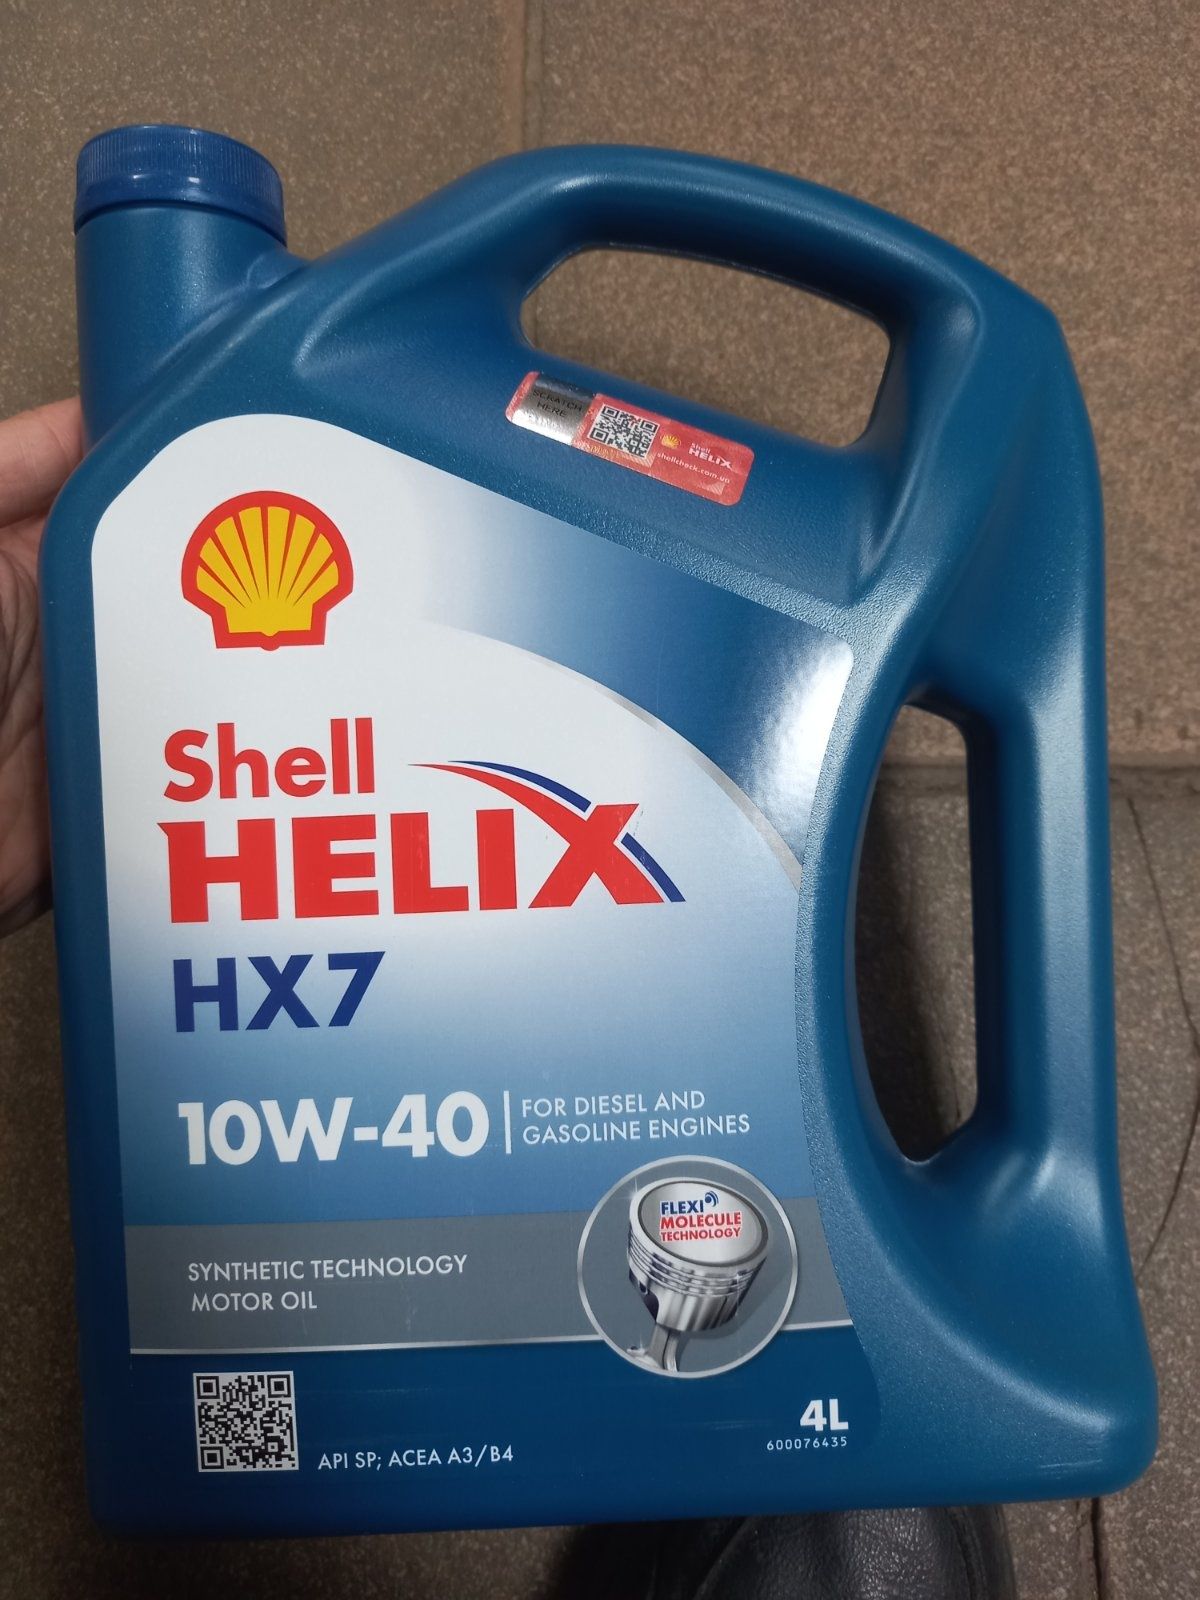 Shell Hellix HX7 10w40